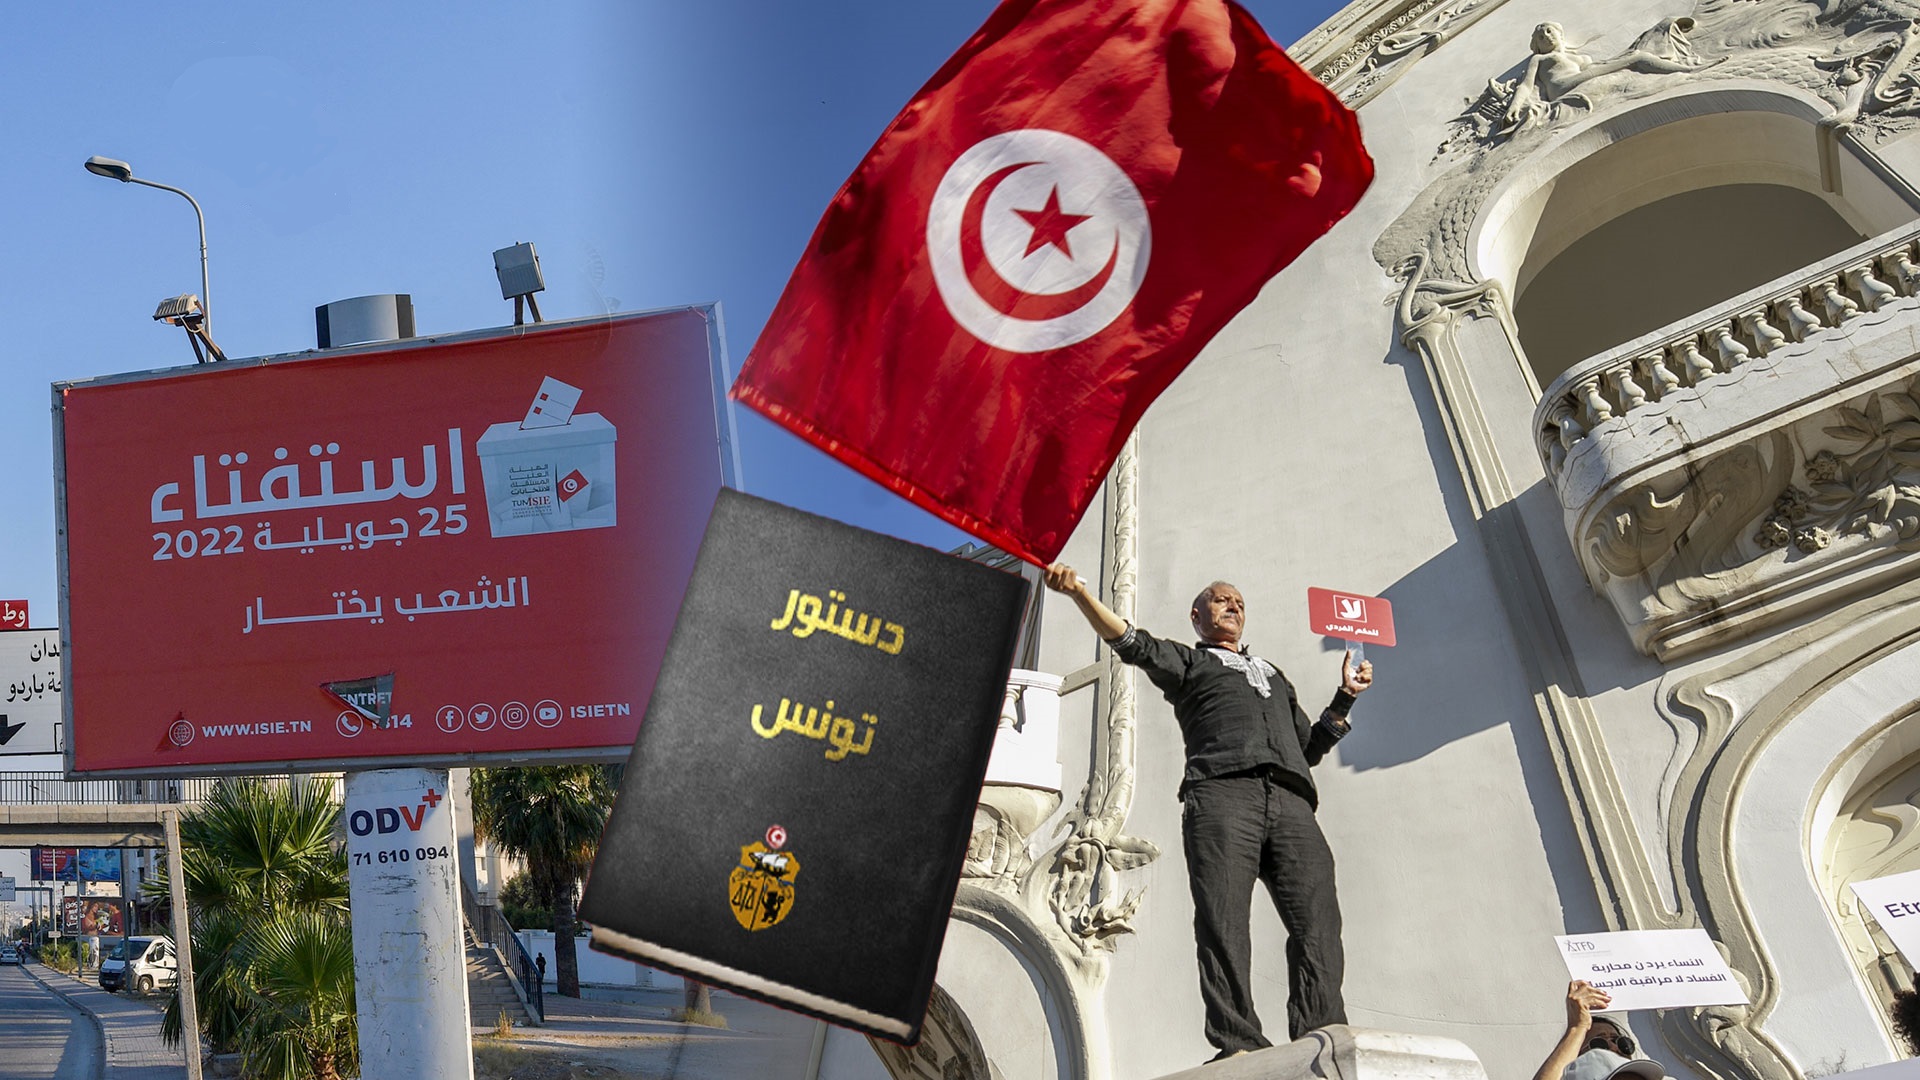 مشارکت اندک تونسی ها در همه پرسی قانون اساسی جدید